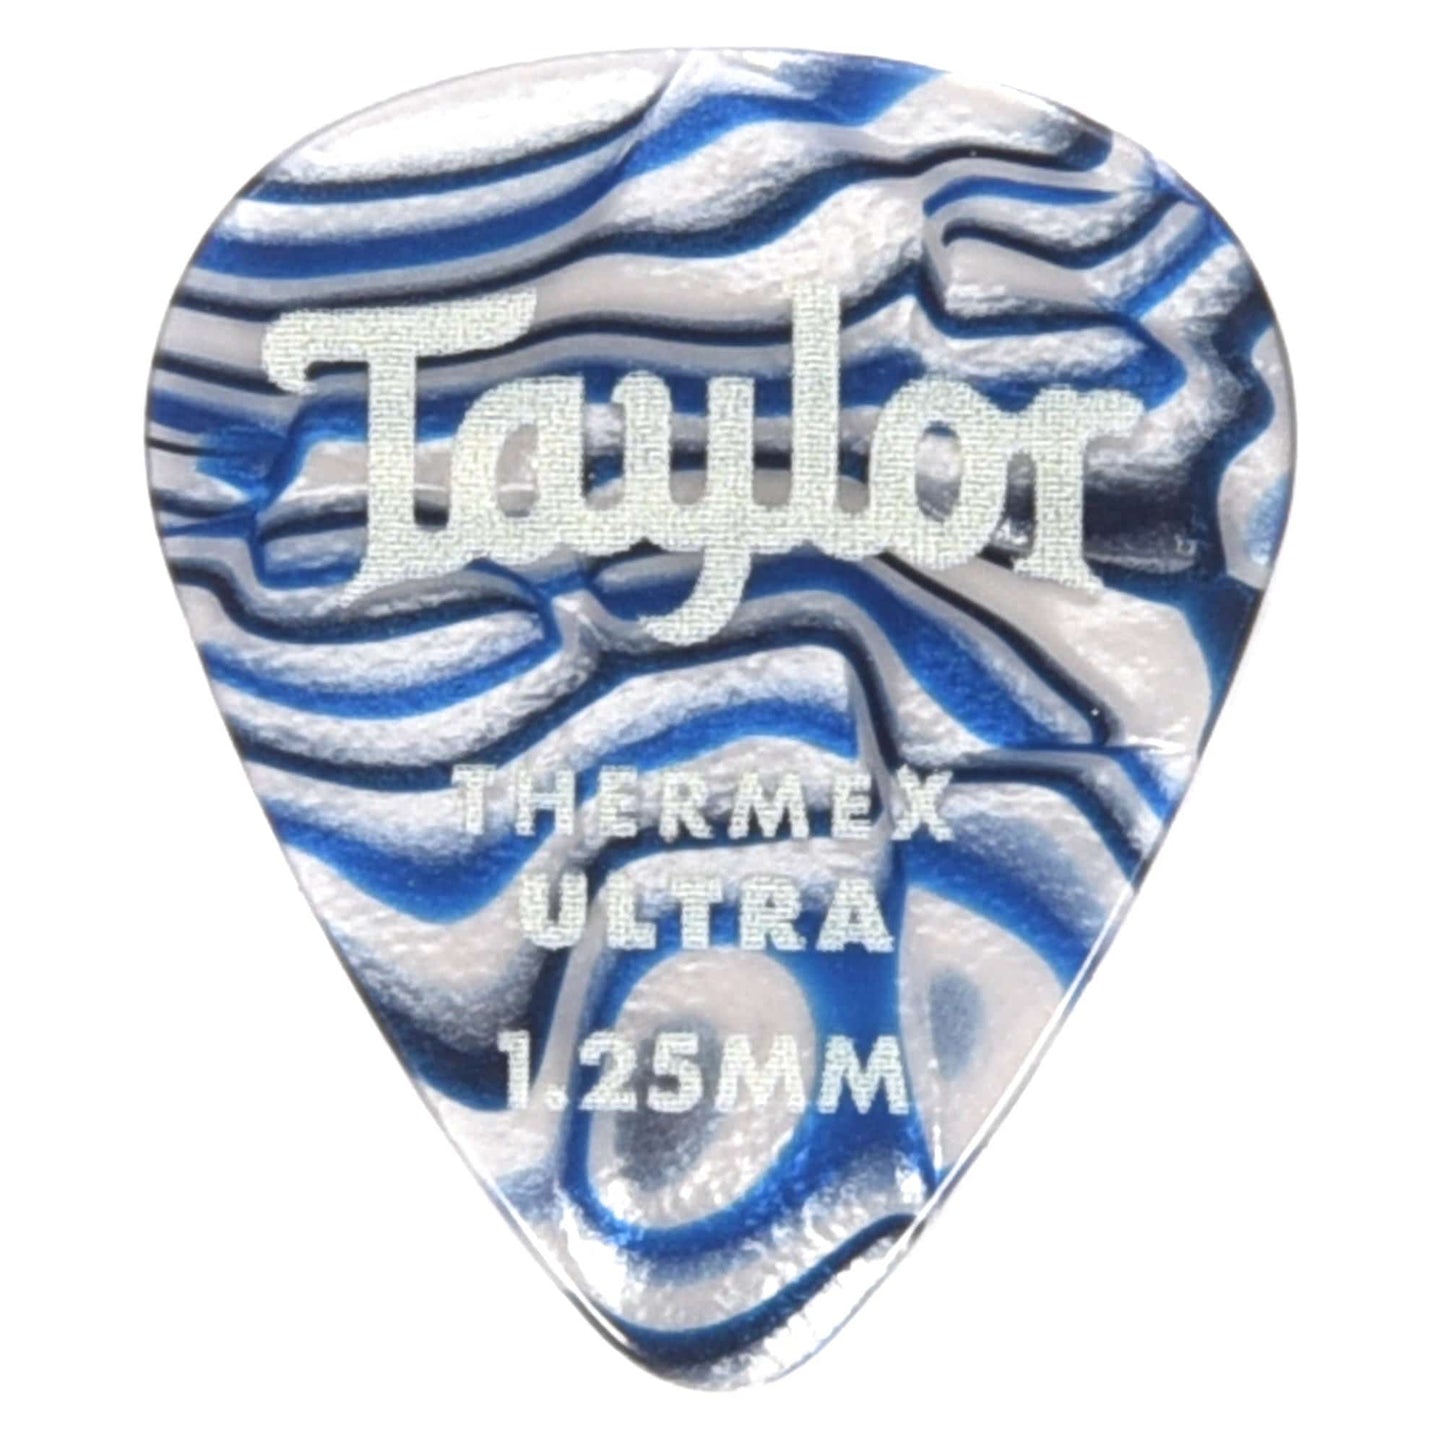 Taylor Premium Darktone 351 Thermex Ultra Picks Blue Swirl 1.25mm 3 Pack (18) Bundle Accessories / Picks